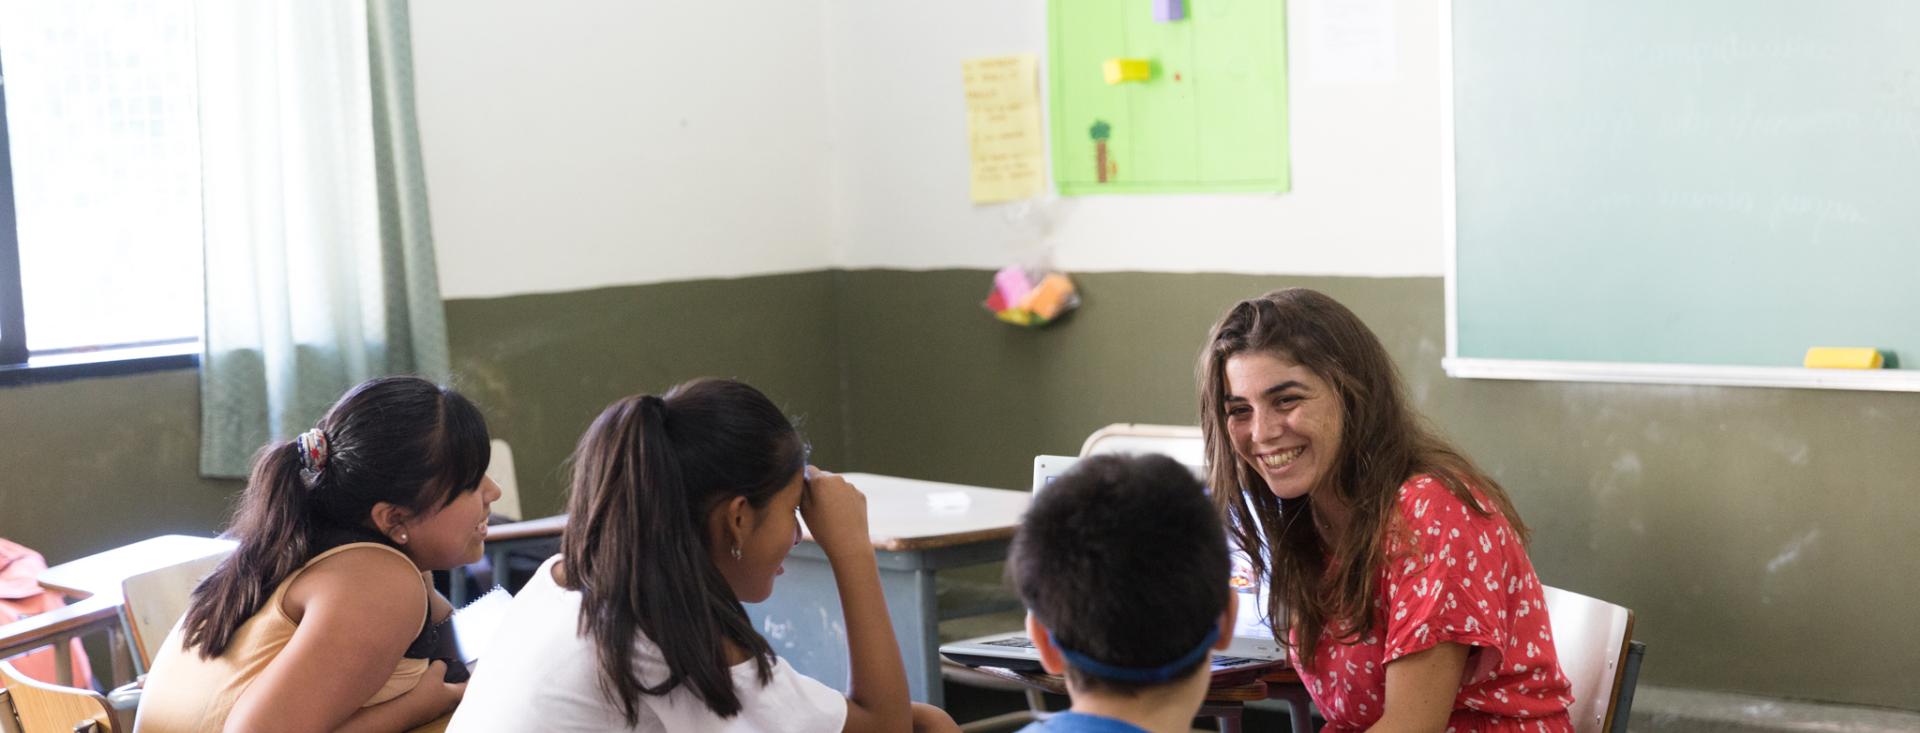 Tres estudiantes están sentados en sus escritorios en una aula con su profesora sonriendo, sentada frente a ellos.